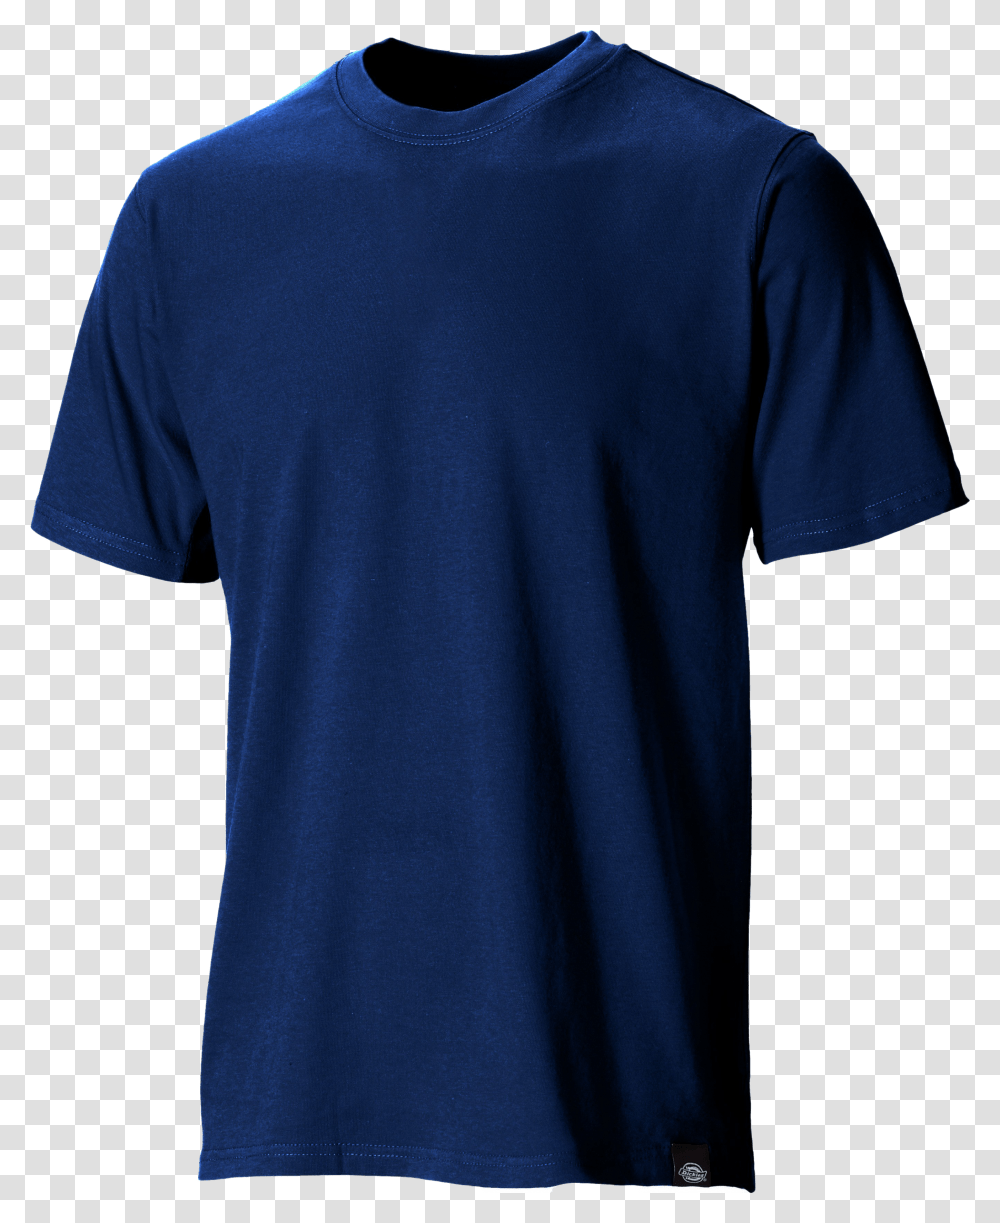 Plain Blue T Shirt Background Plain Blue T Shirt Transparent Png